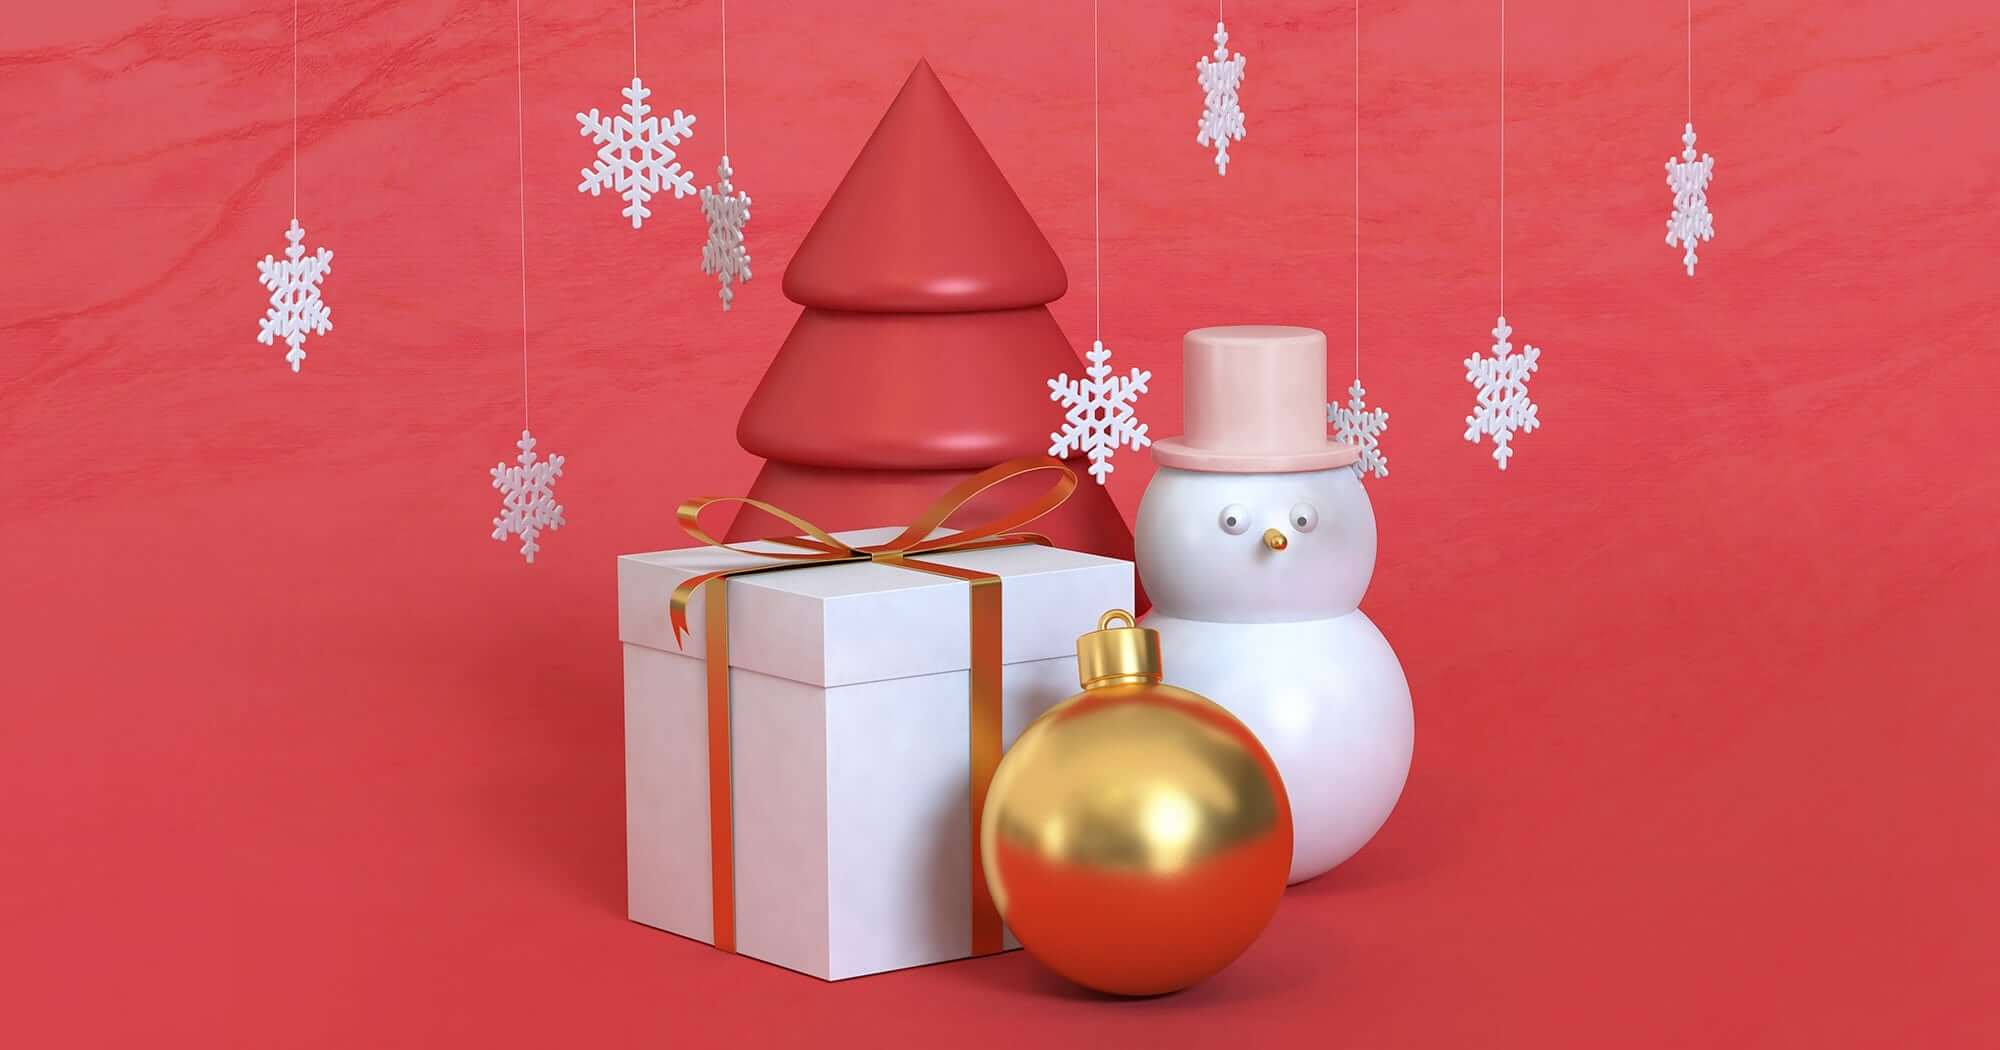 Christmas tree, giftbox, snowman and Christmas tree ball